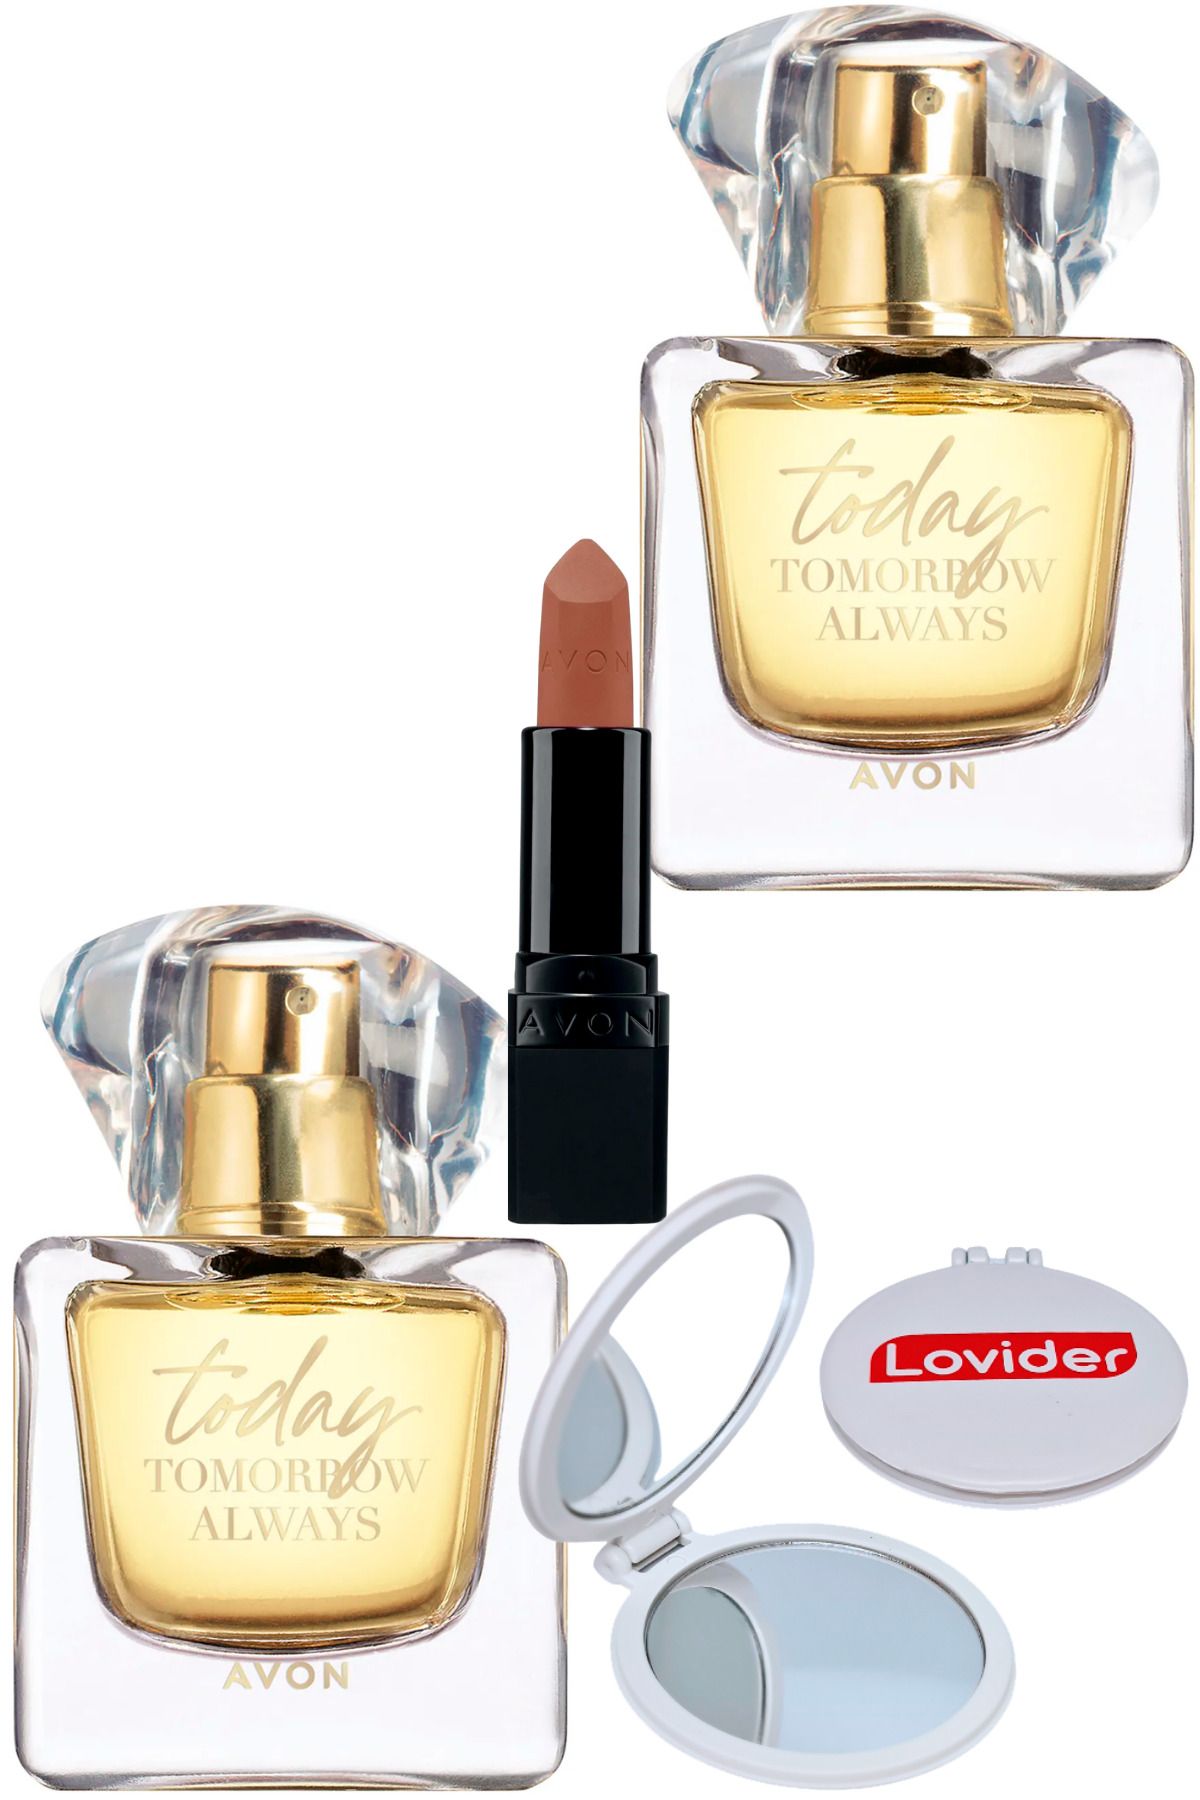 Avon TTA Today Kadın Parfüm EDP 50ml 2 Adet + Mat Ruj Marvellous Mocha + Lovider Cep Aynası Hediye